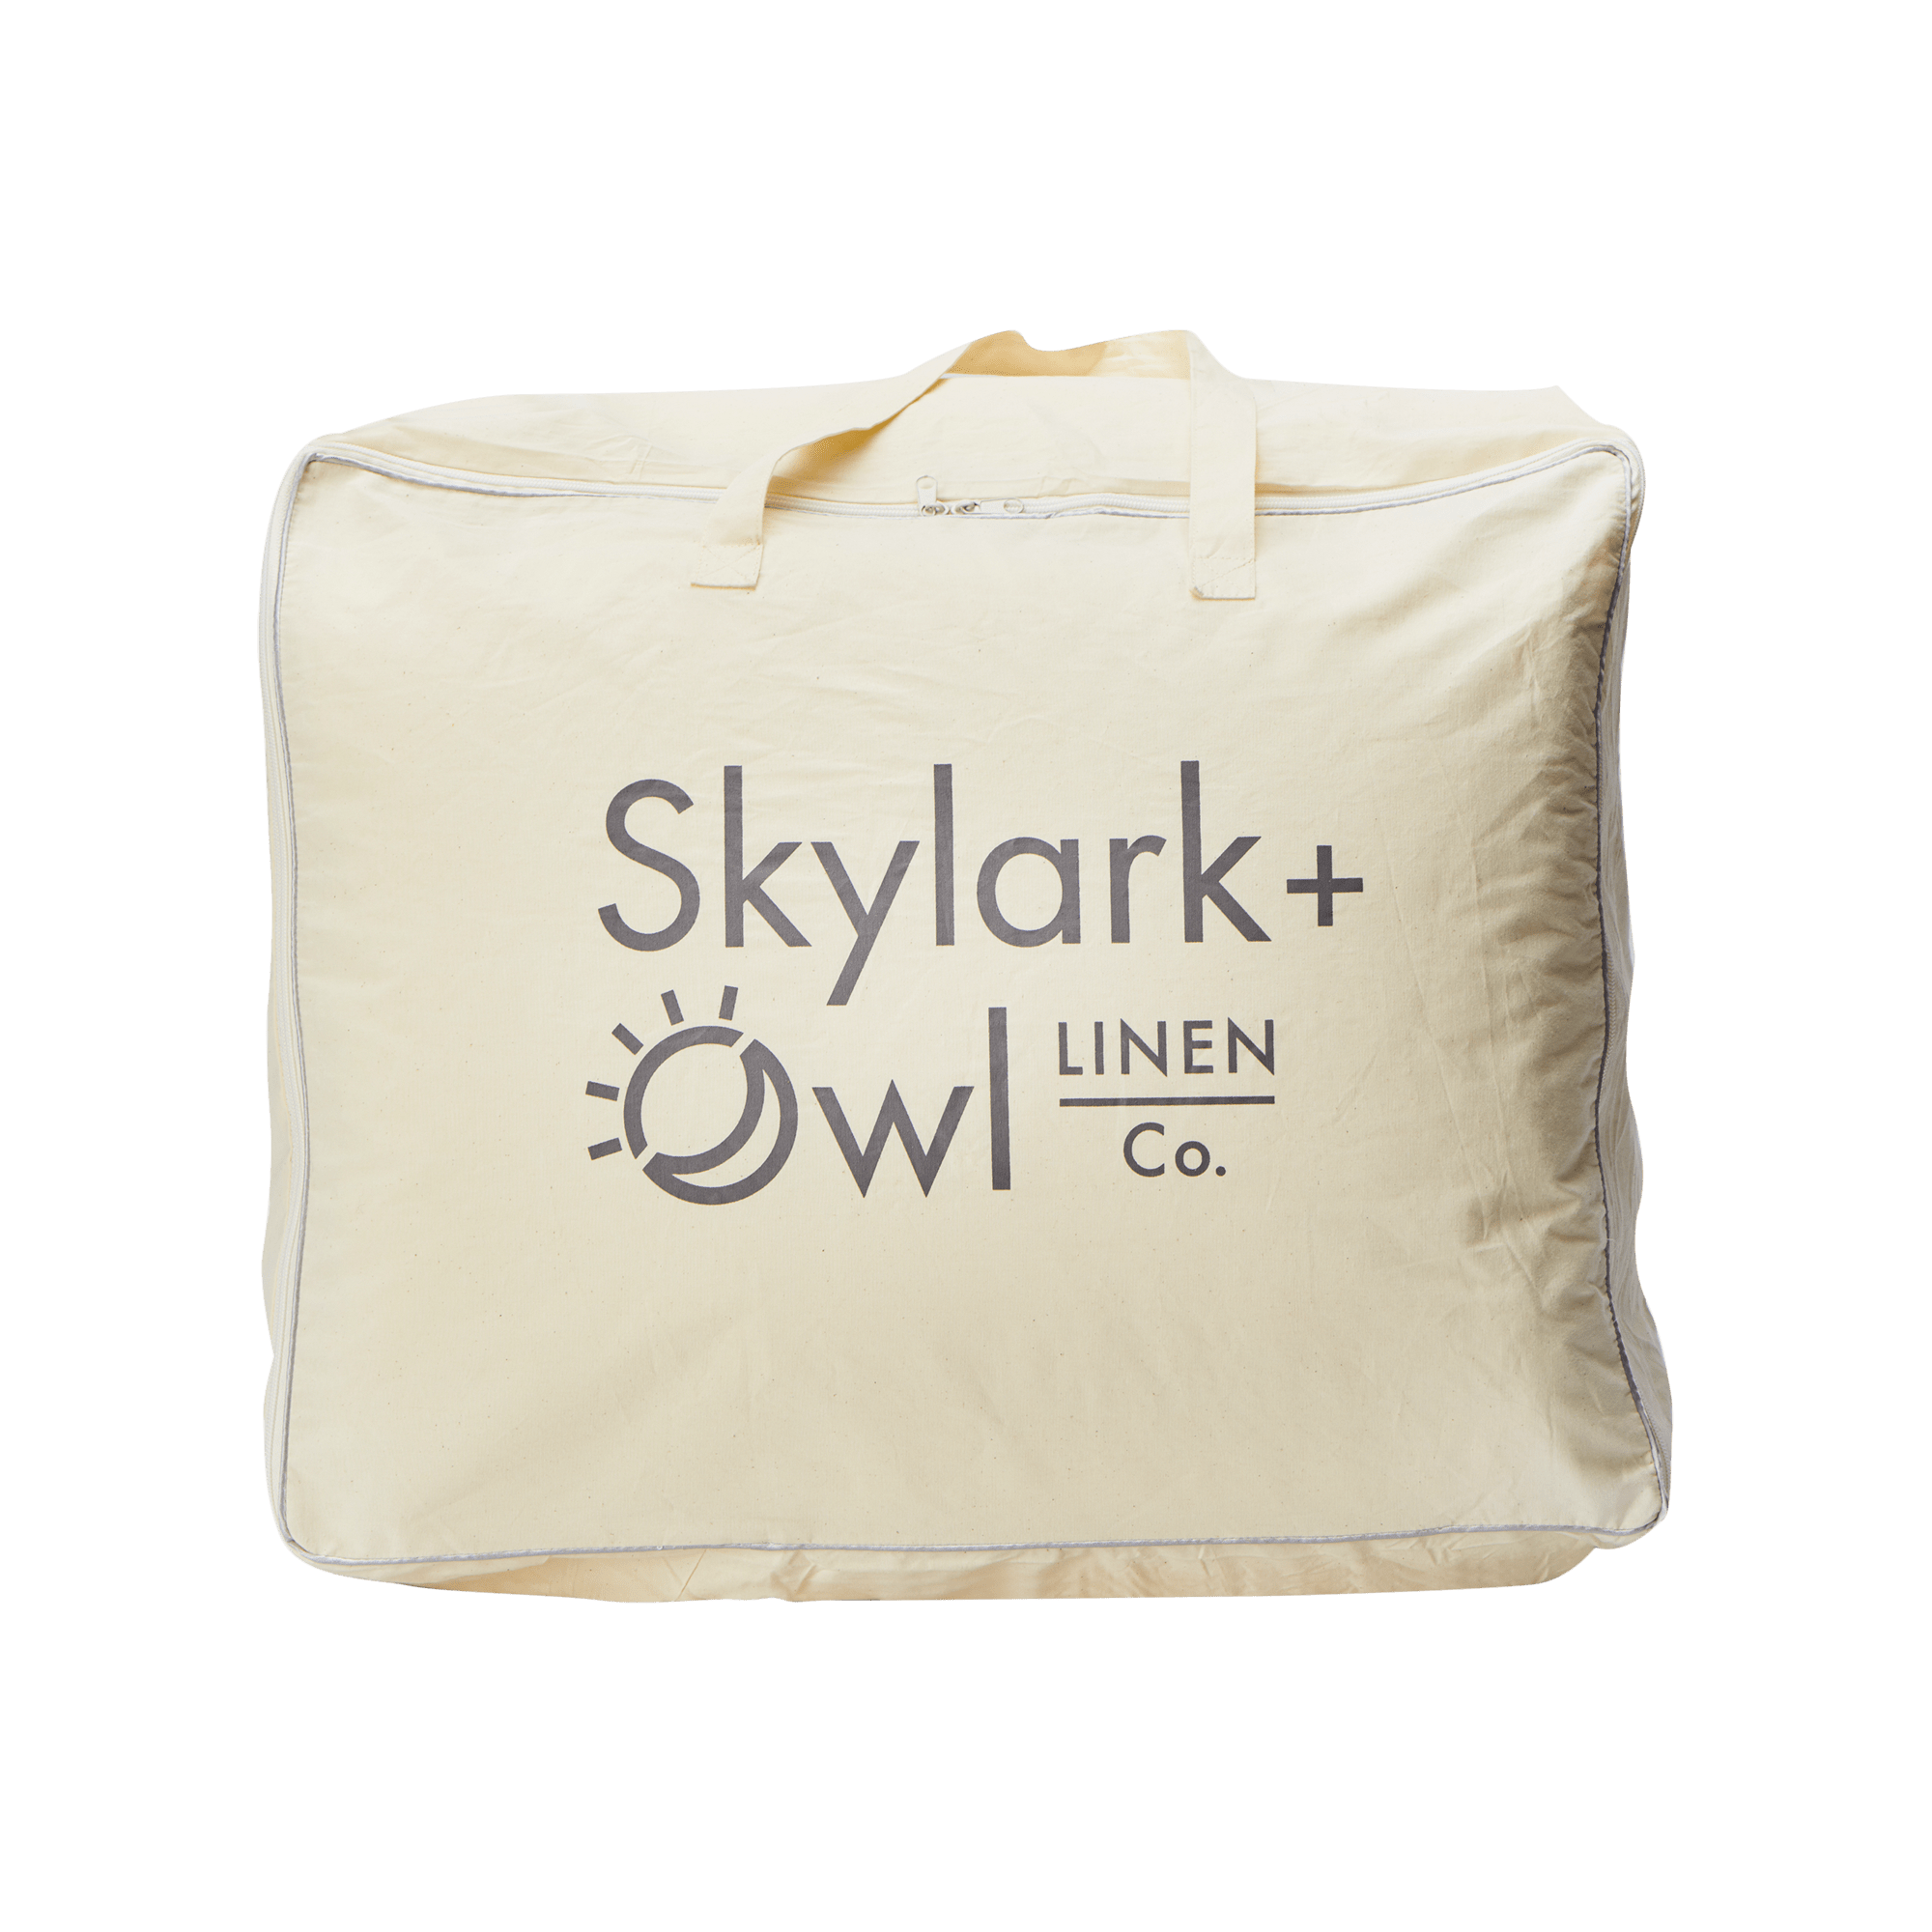 Synthetic Down Duvet Insert | Skylark+Owl Linen Co.